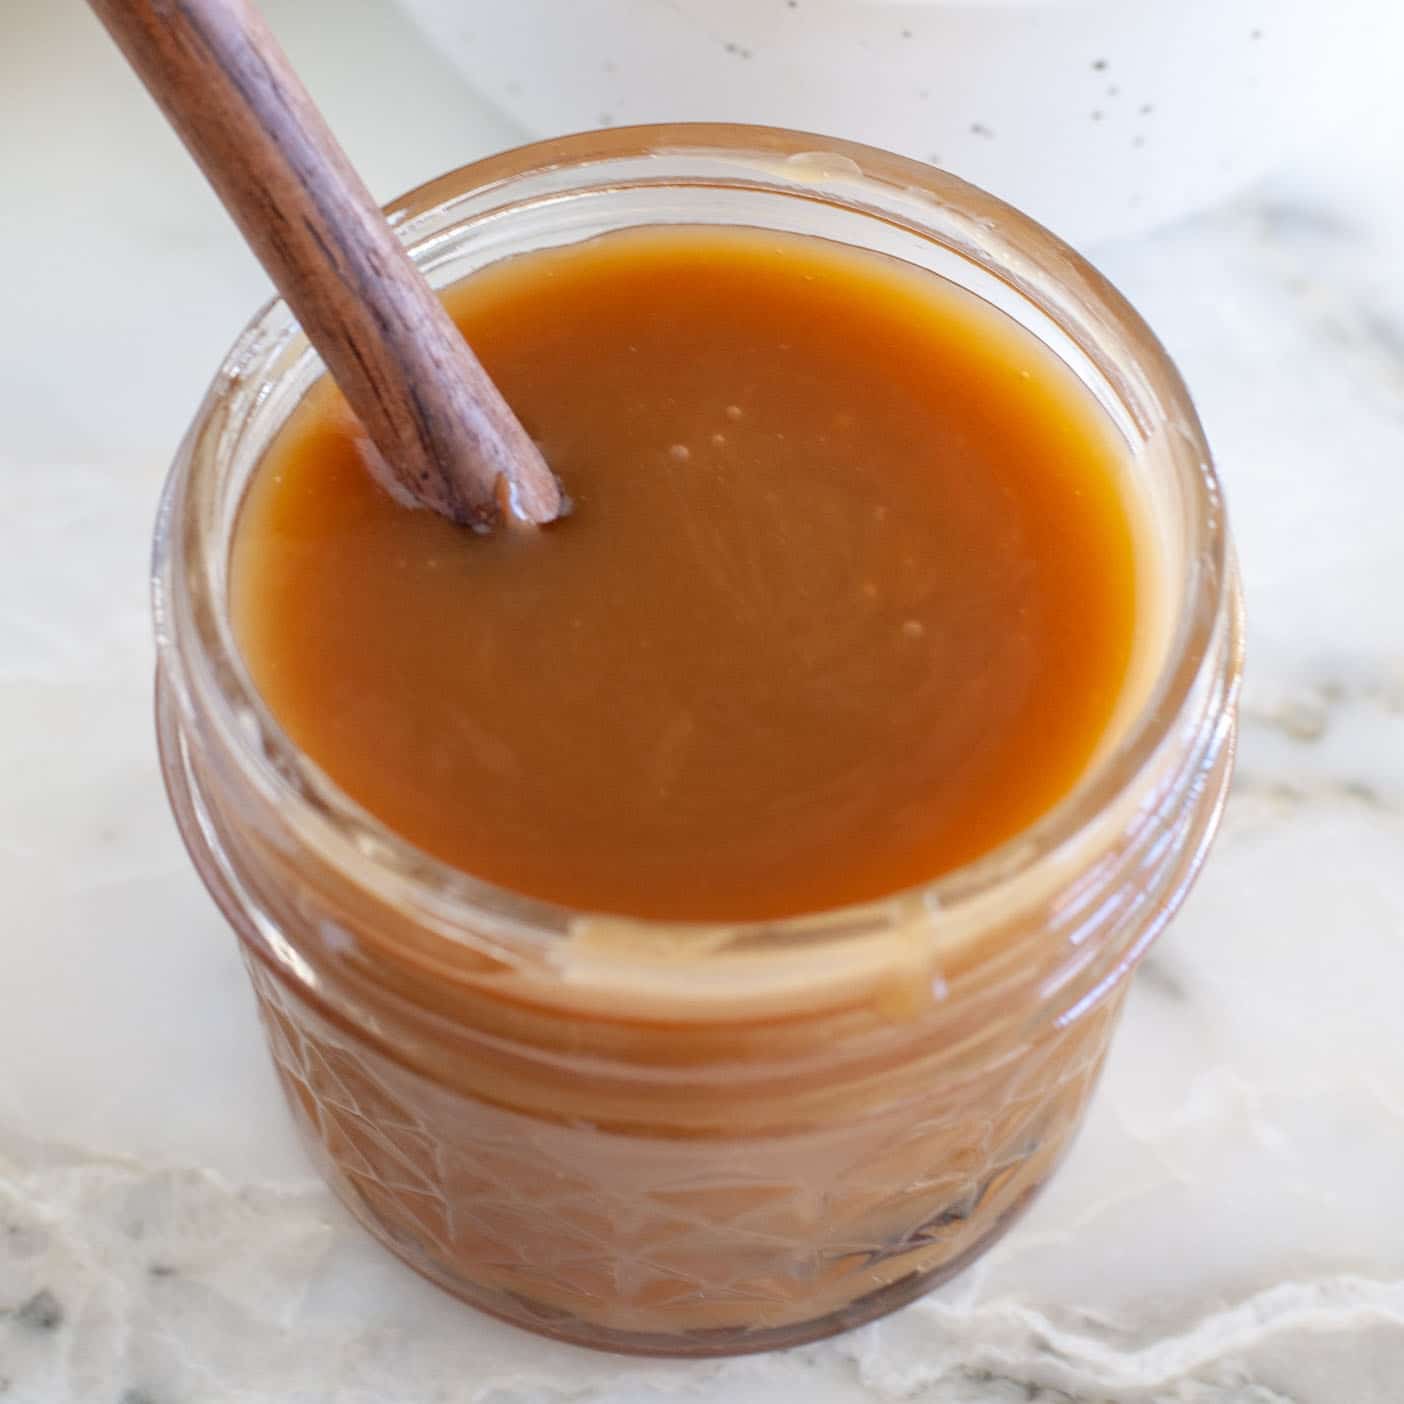 Jar of caramel sauce.